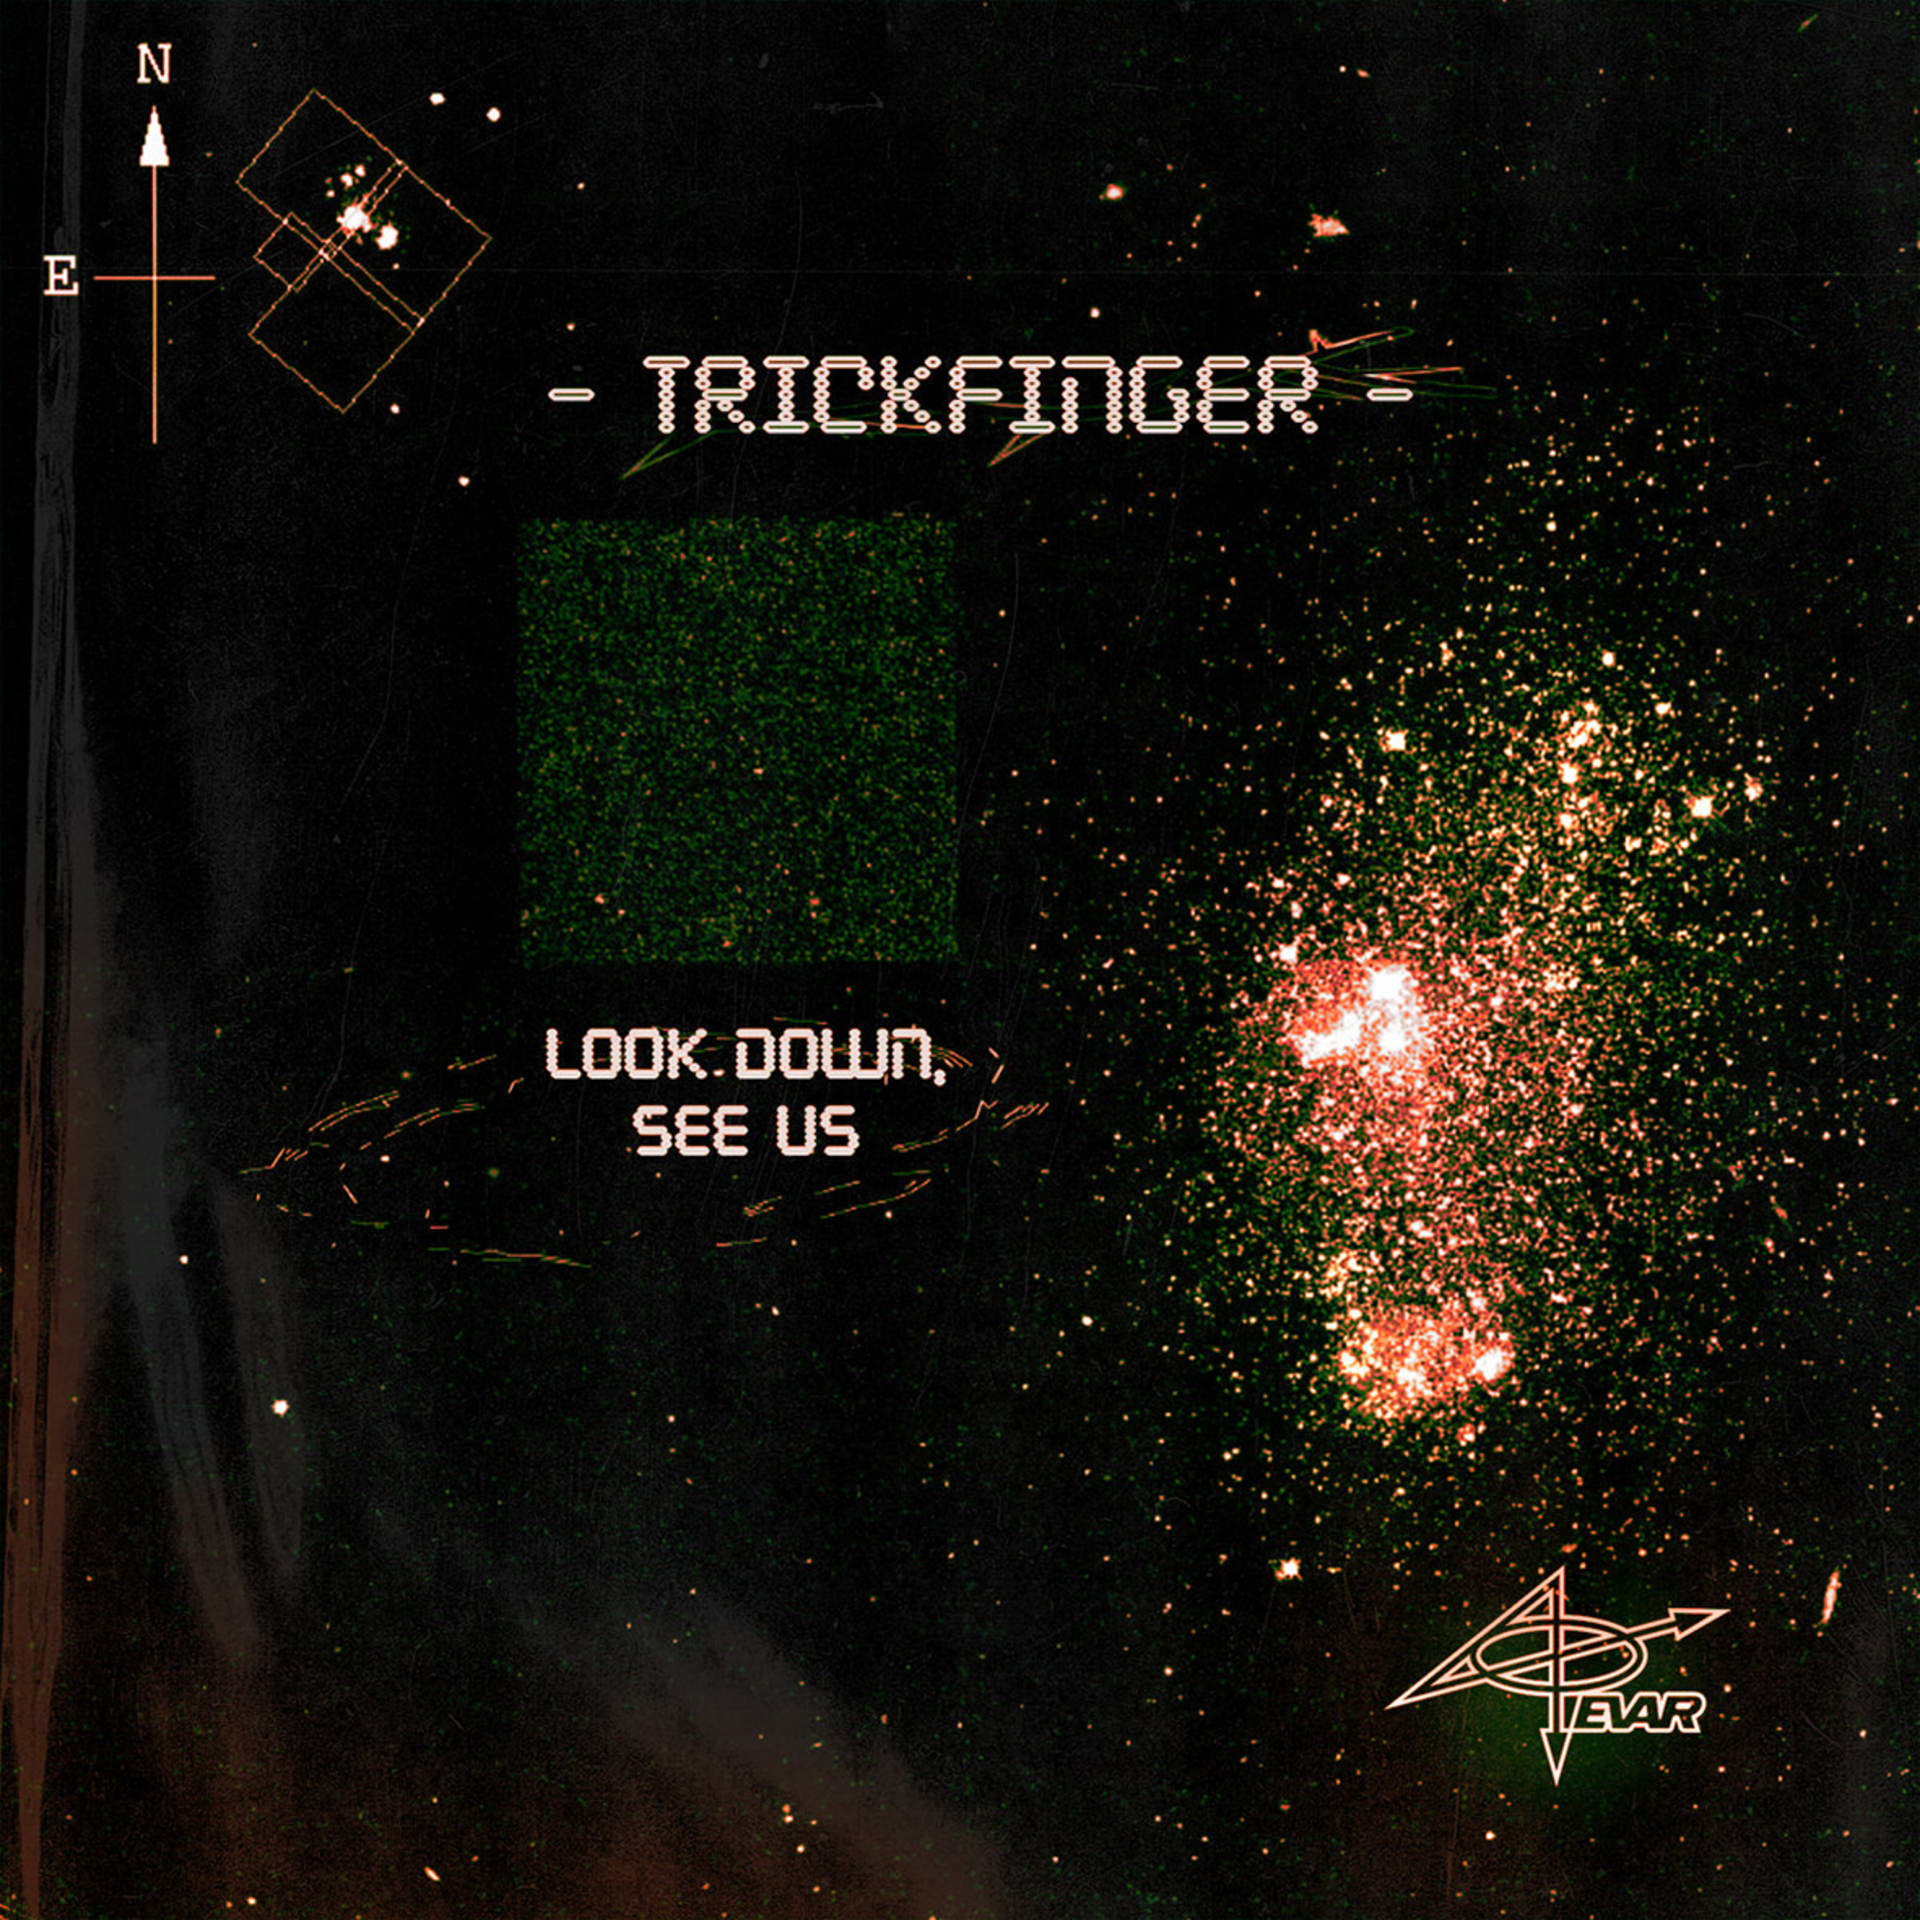 Sólové album Look Down, See Us, které John Frusciante vydal pod pseudonymem Trickfinger, je jedním z mála kulturních počinů koronavirových časů.